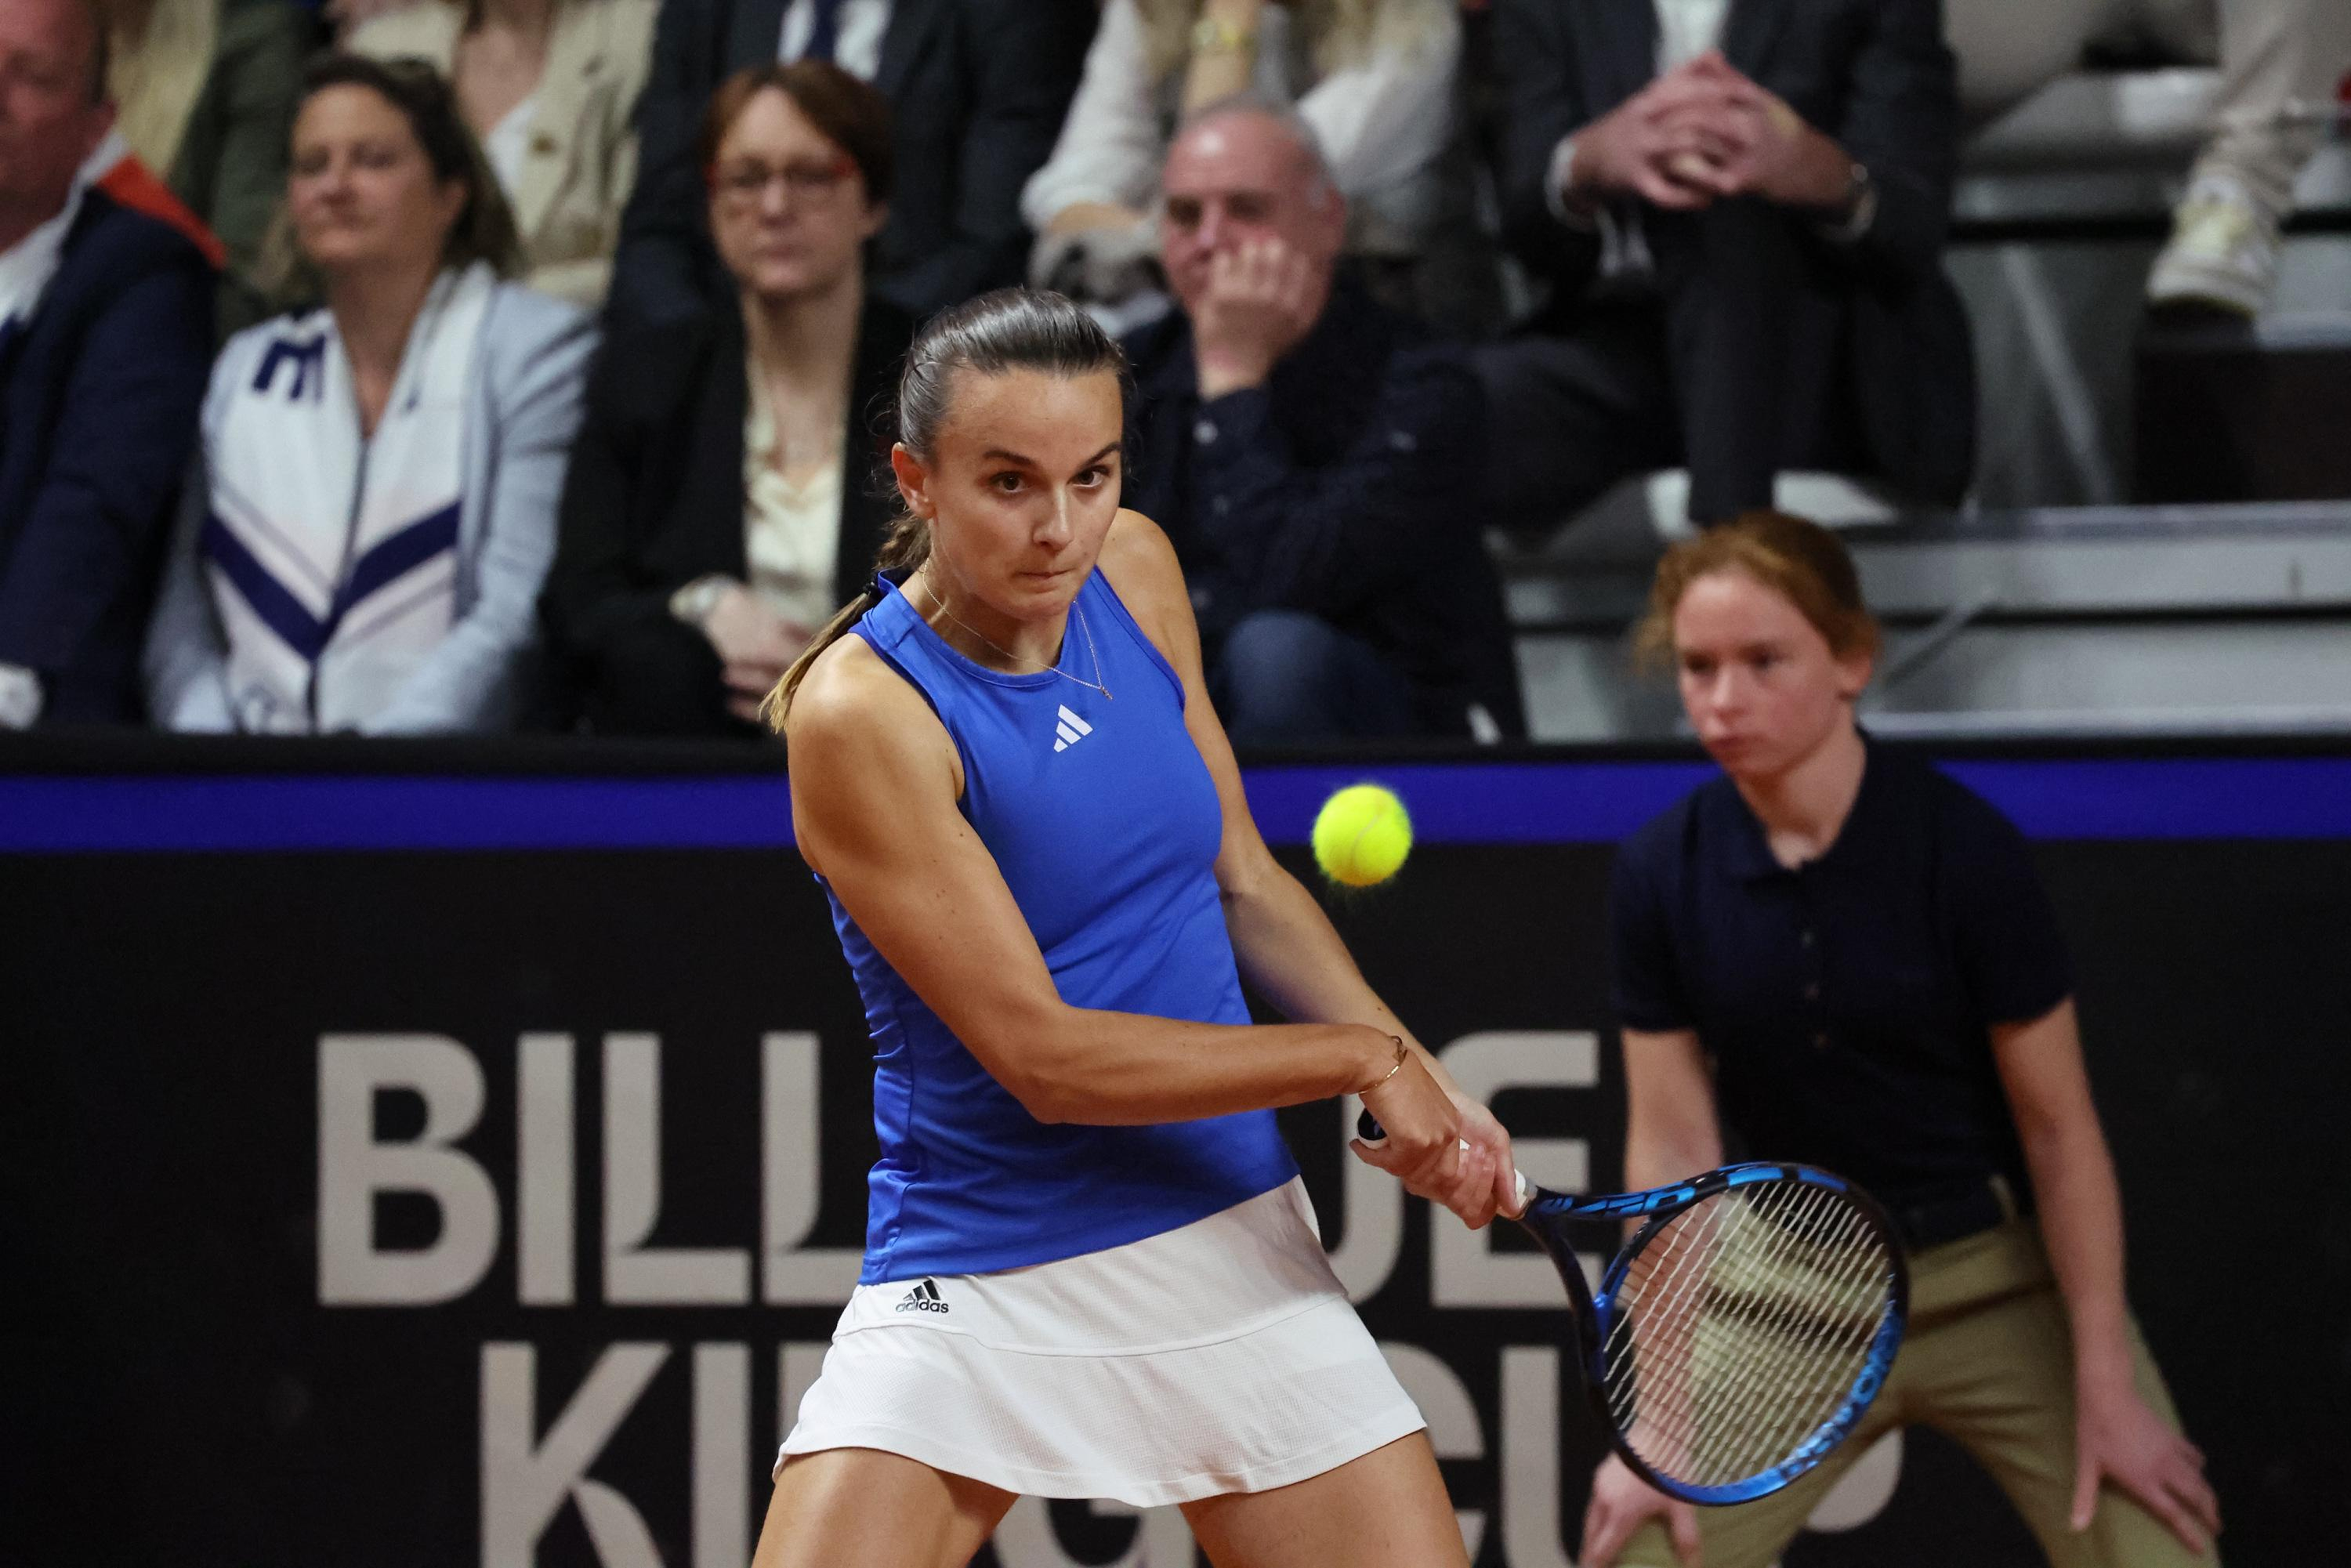 Tennis: Clara Burel loses in the second round in Rouen